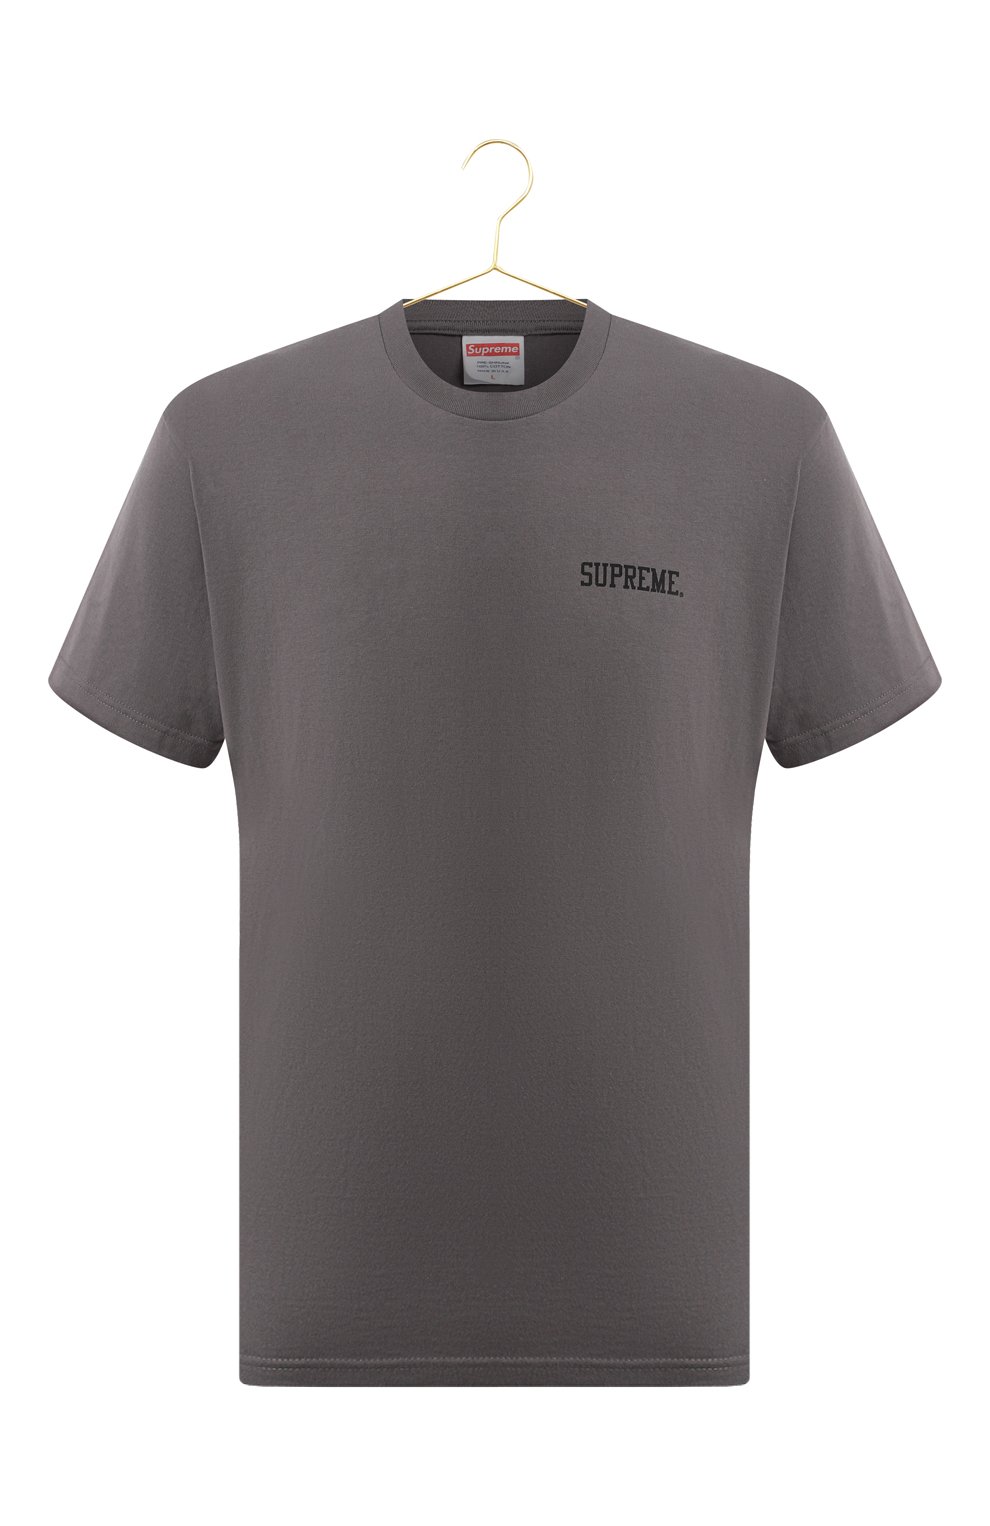 Хлопковая футболка | Supreme | Серый - 1